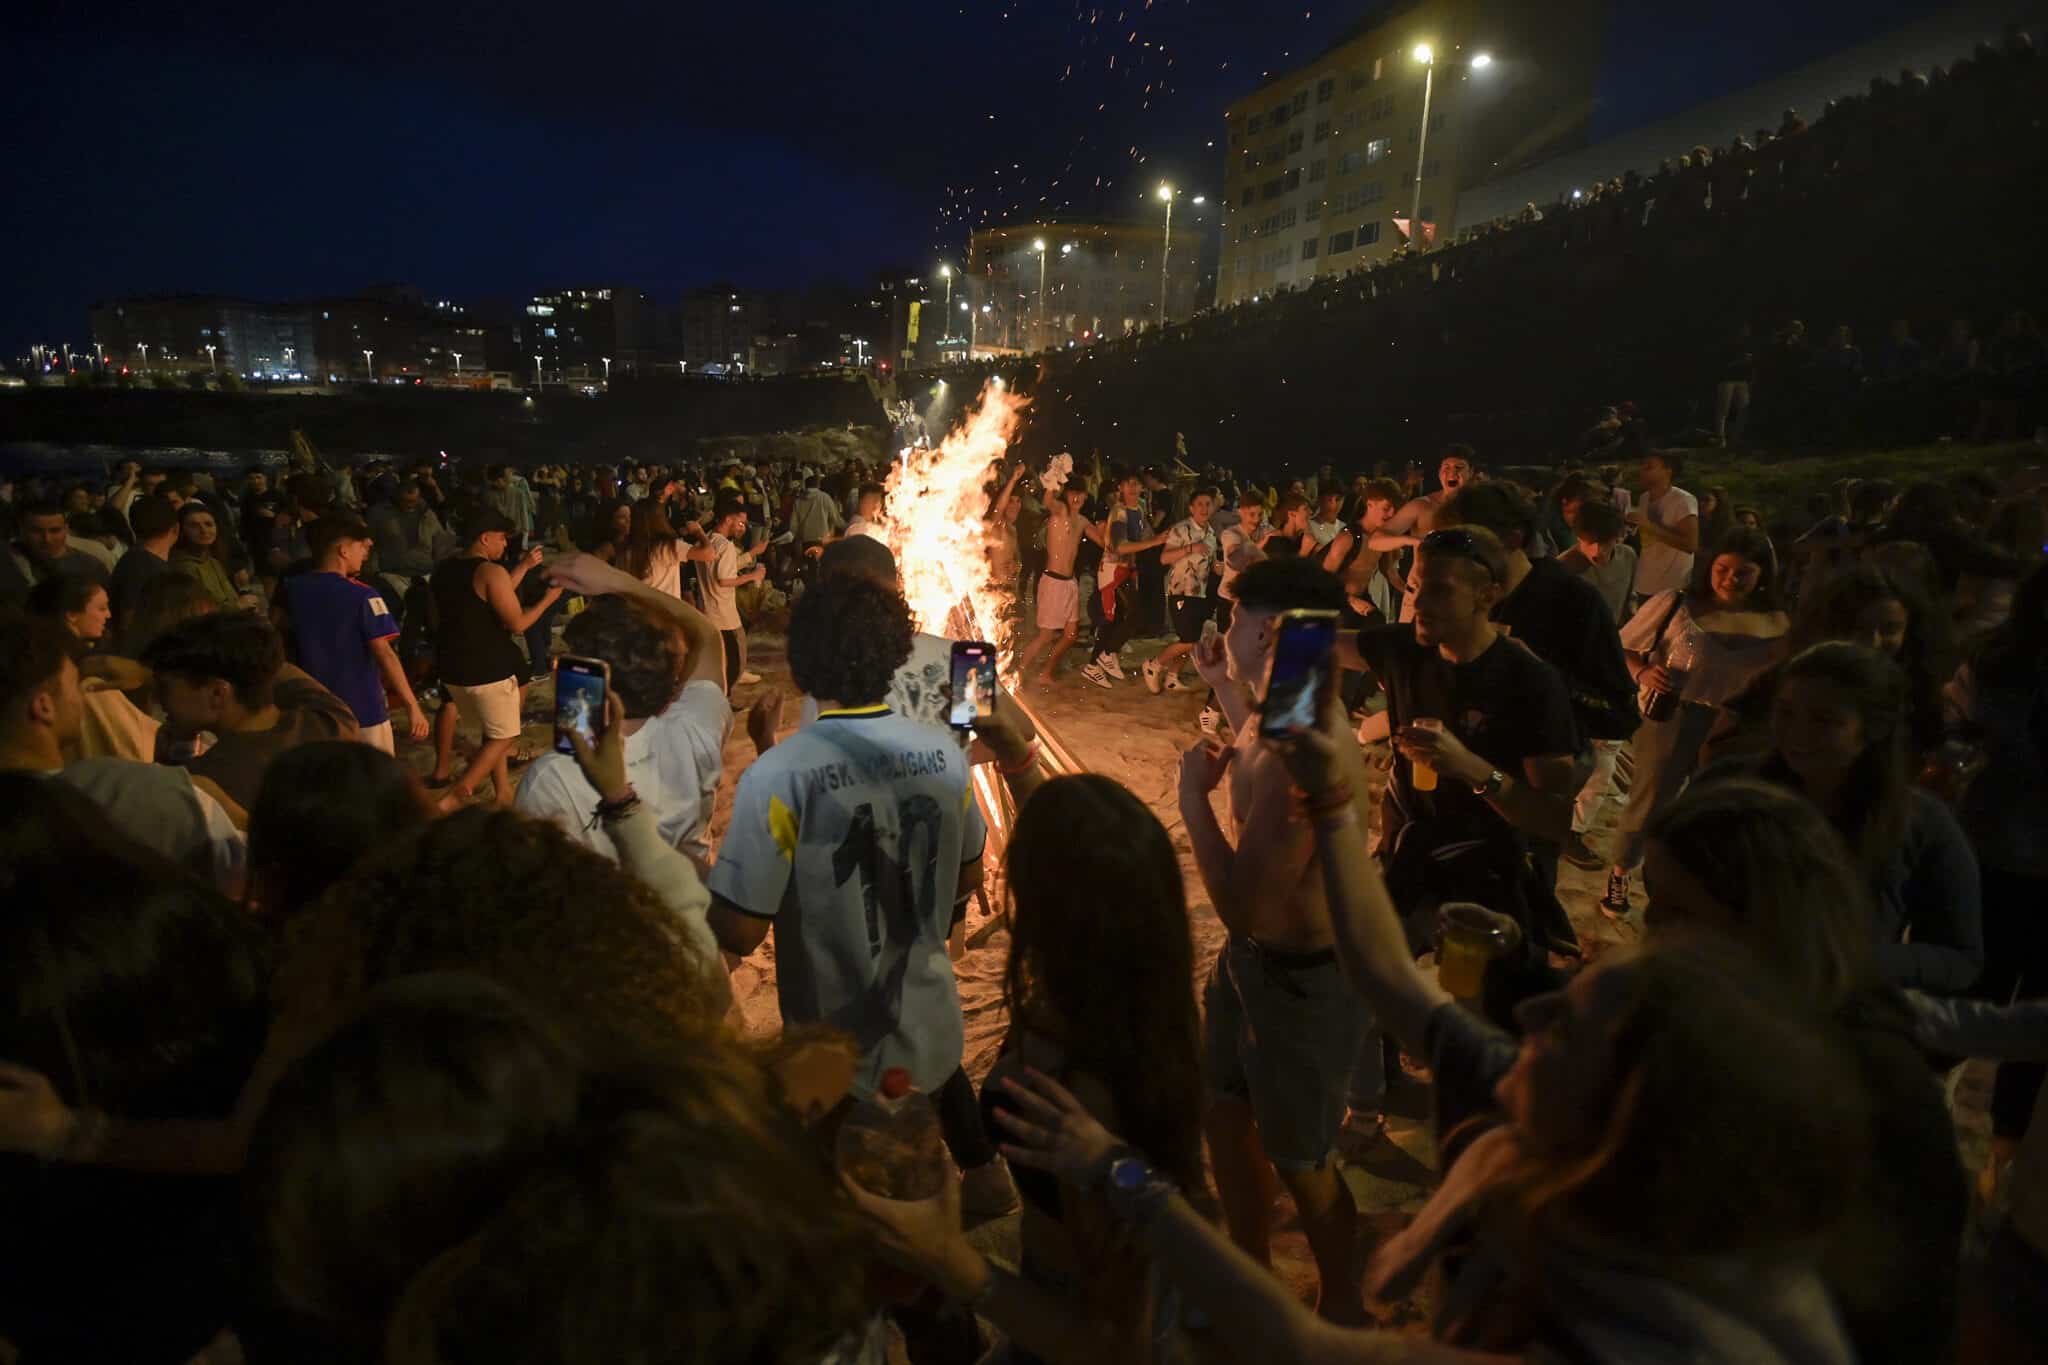 Centenares de personas frente a una hoguera en la Noche de San Juan, a 23 de junio de 2022, en A Coruña, Galicia